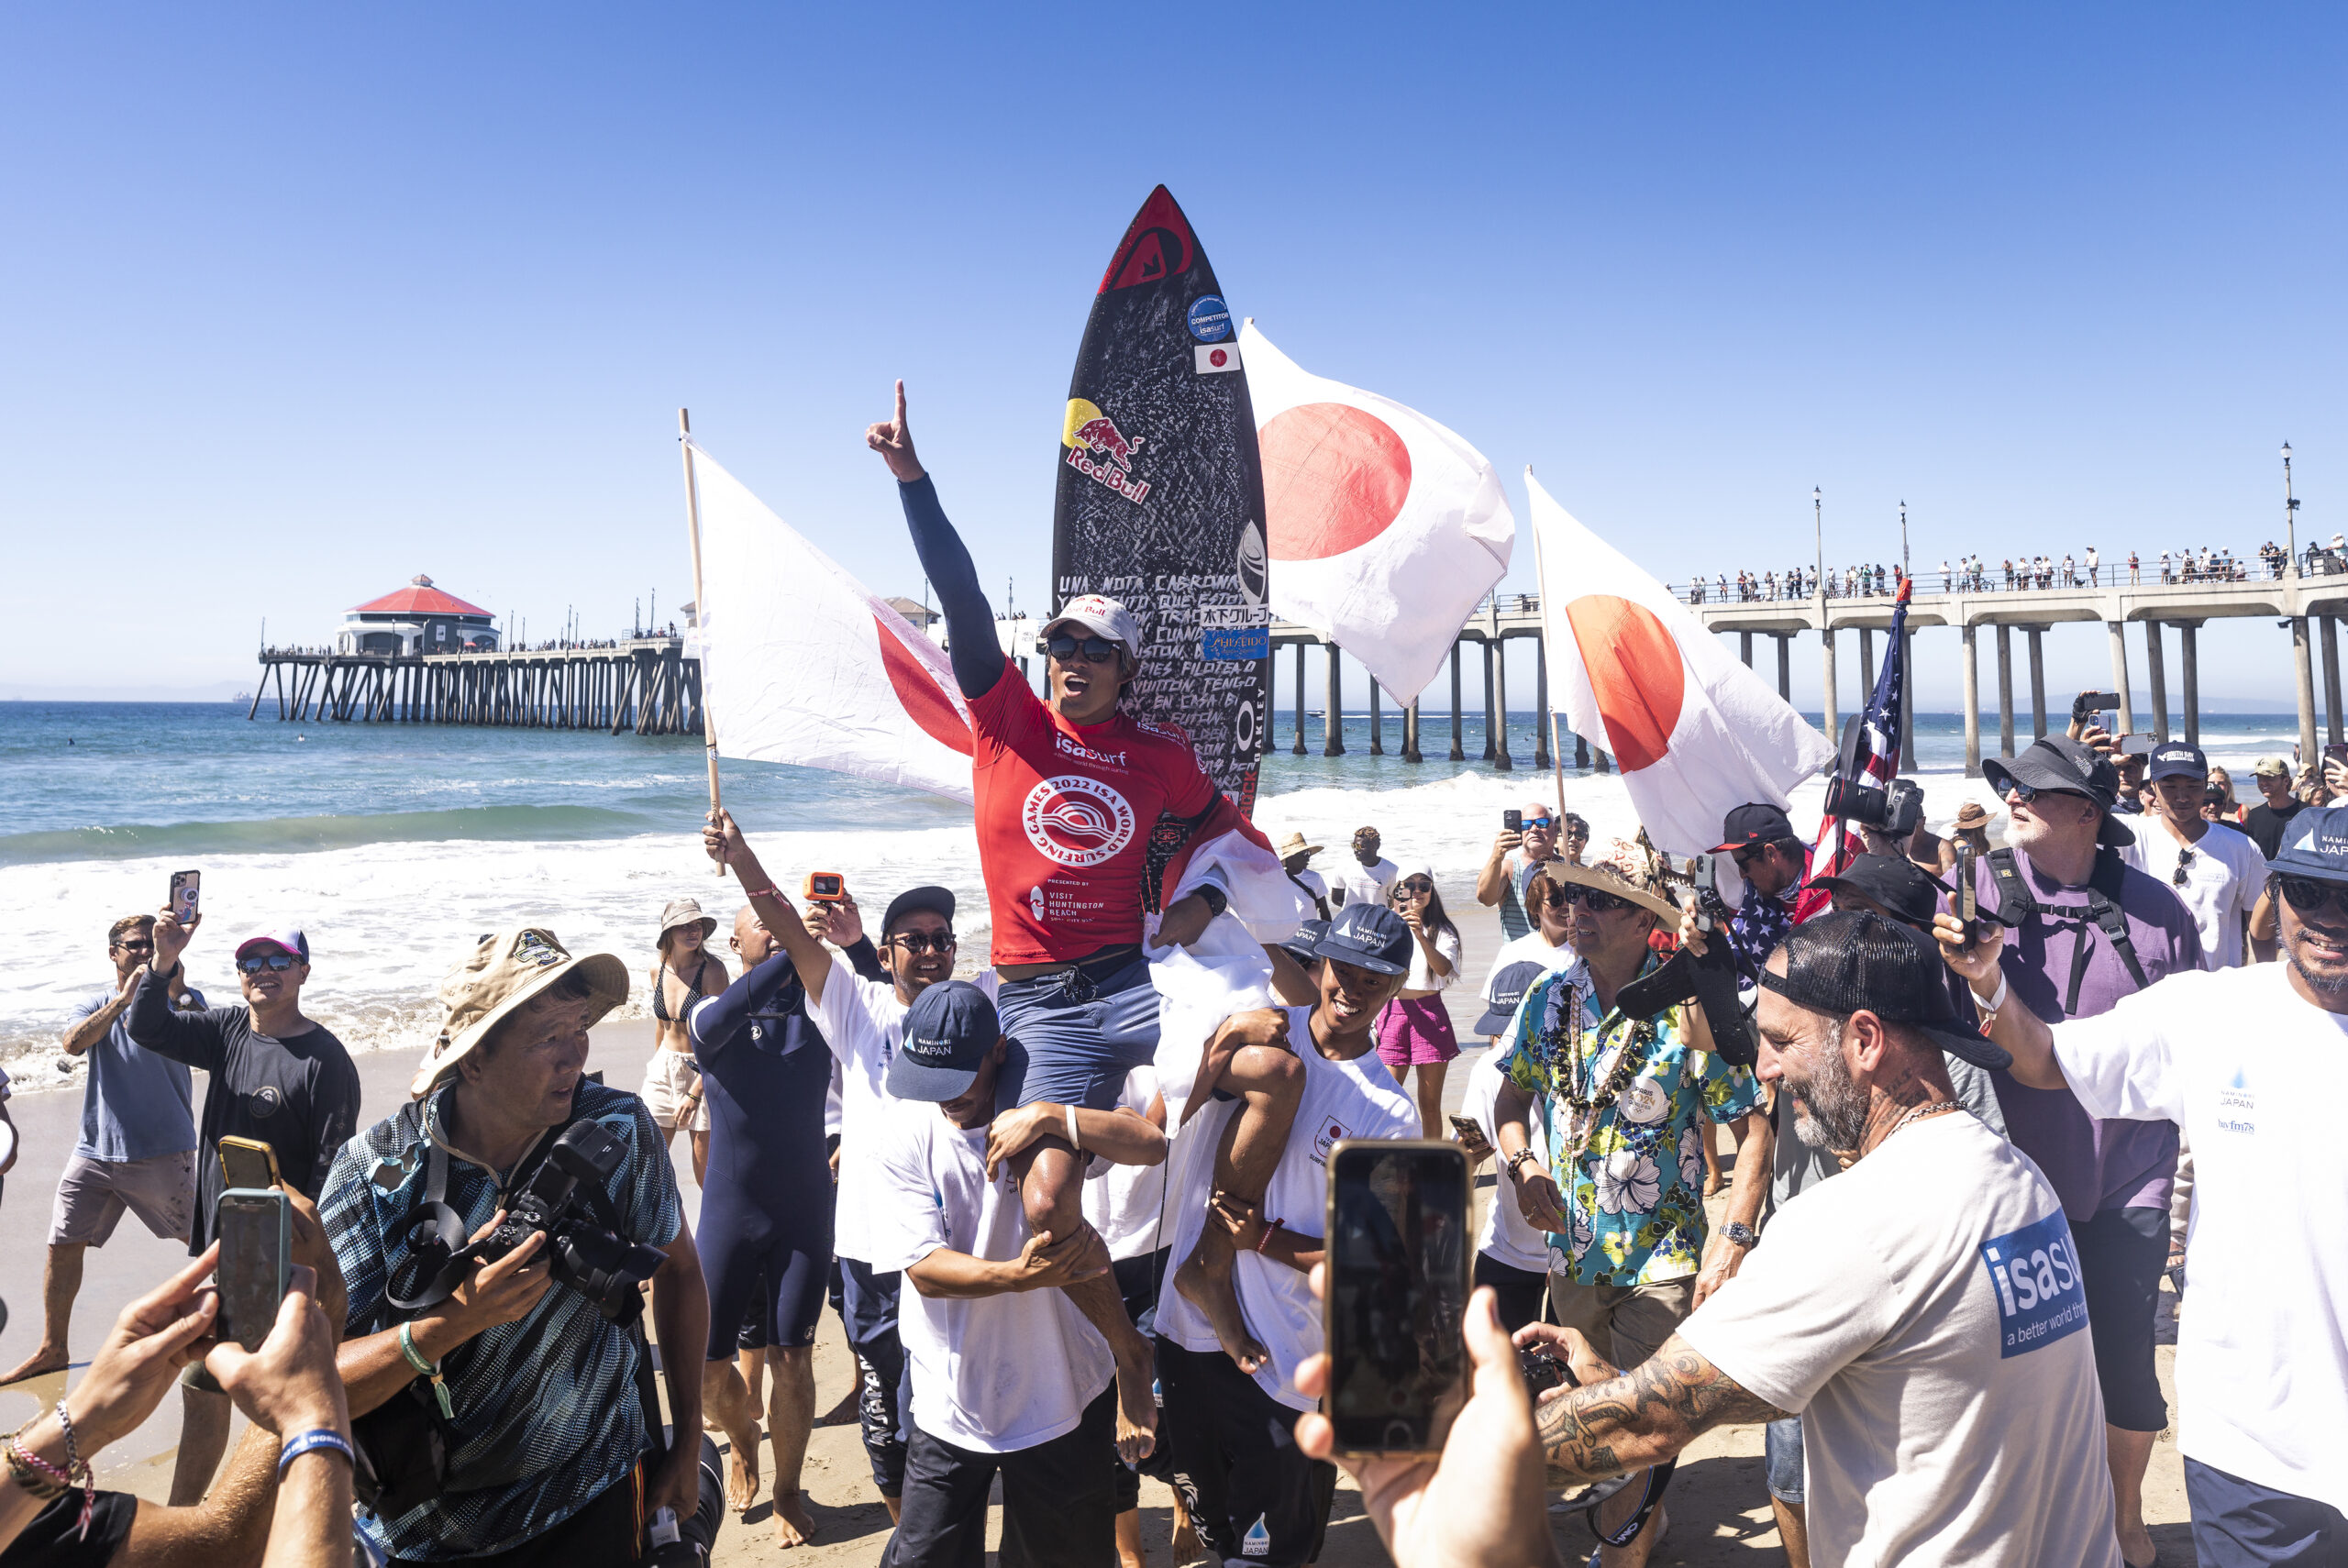 El japonés Kanoa Igarashi y la norteamericana Kirra Pinkerton ganaron la medalla de oro en las olas de Huntington Beach, California